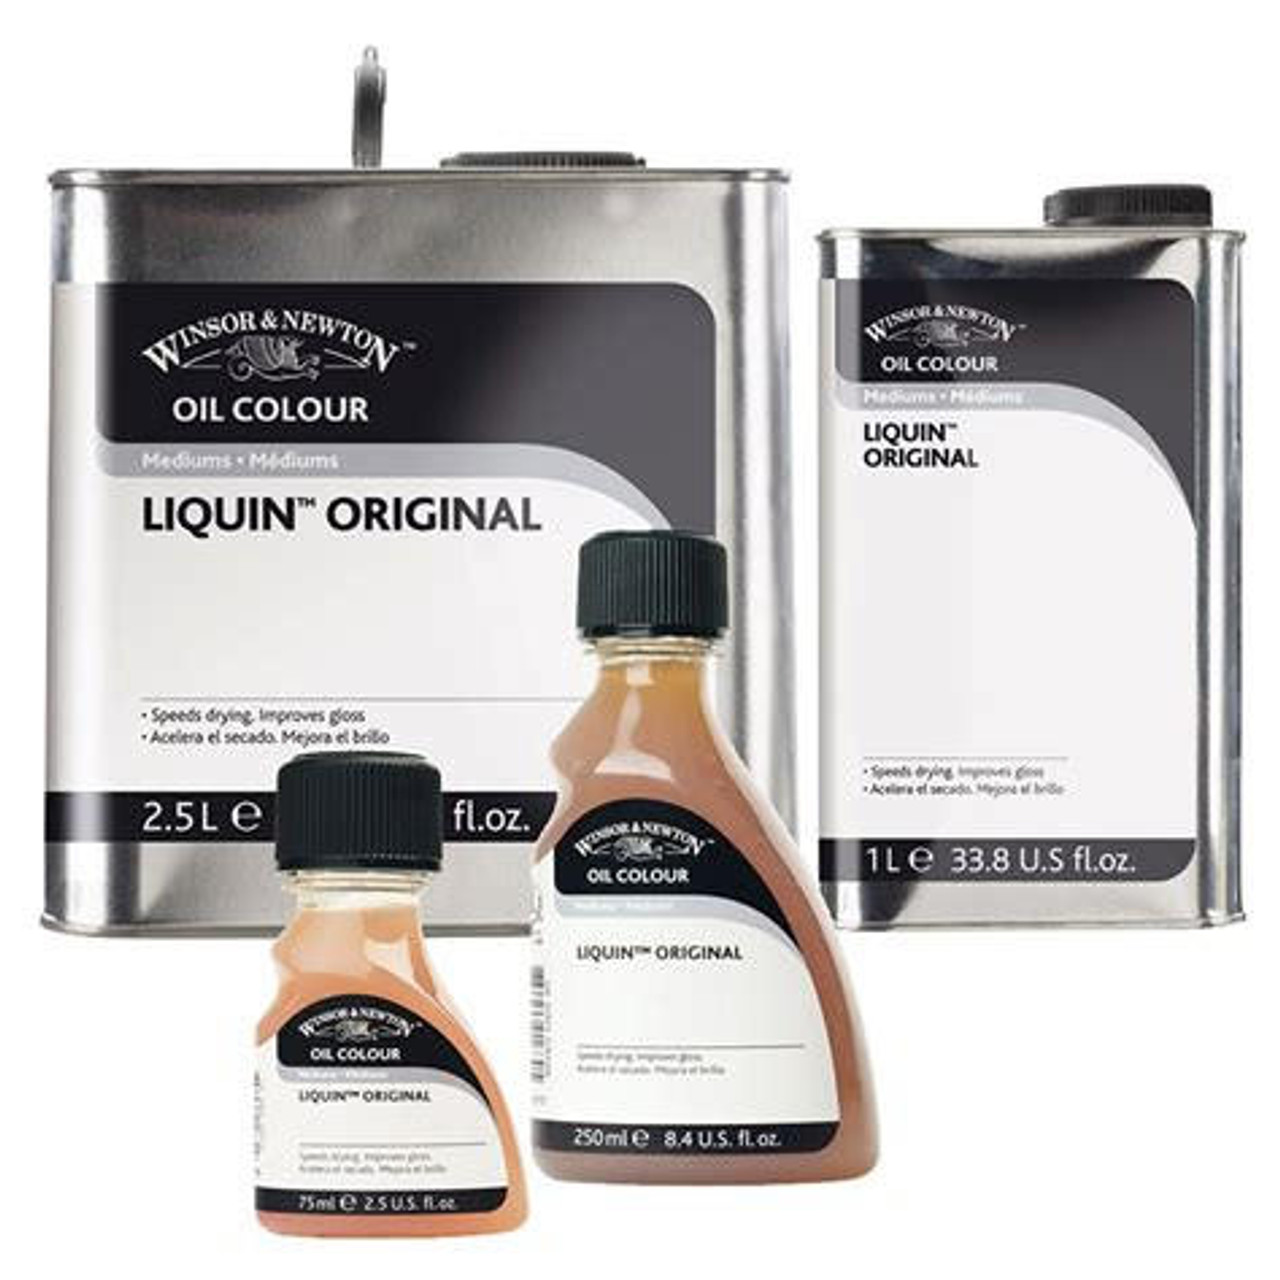 Liquin Original - 1 litre can - Sam Flax Atlanta